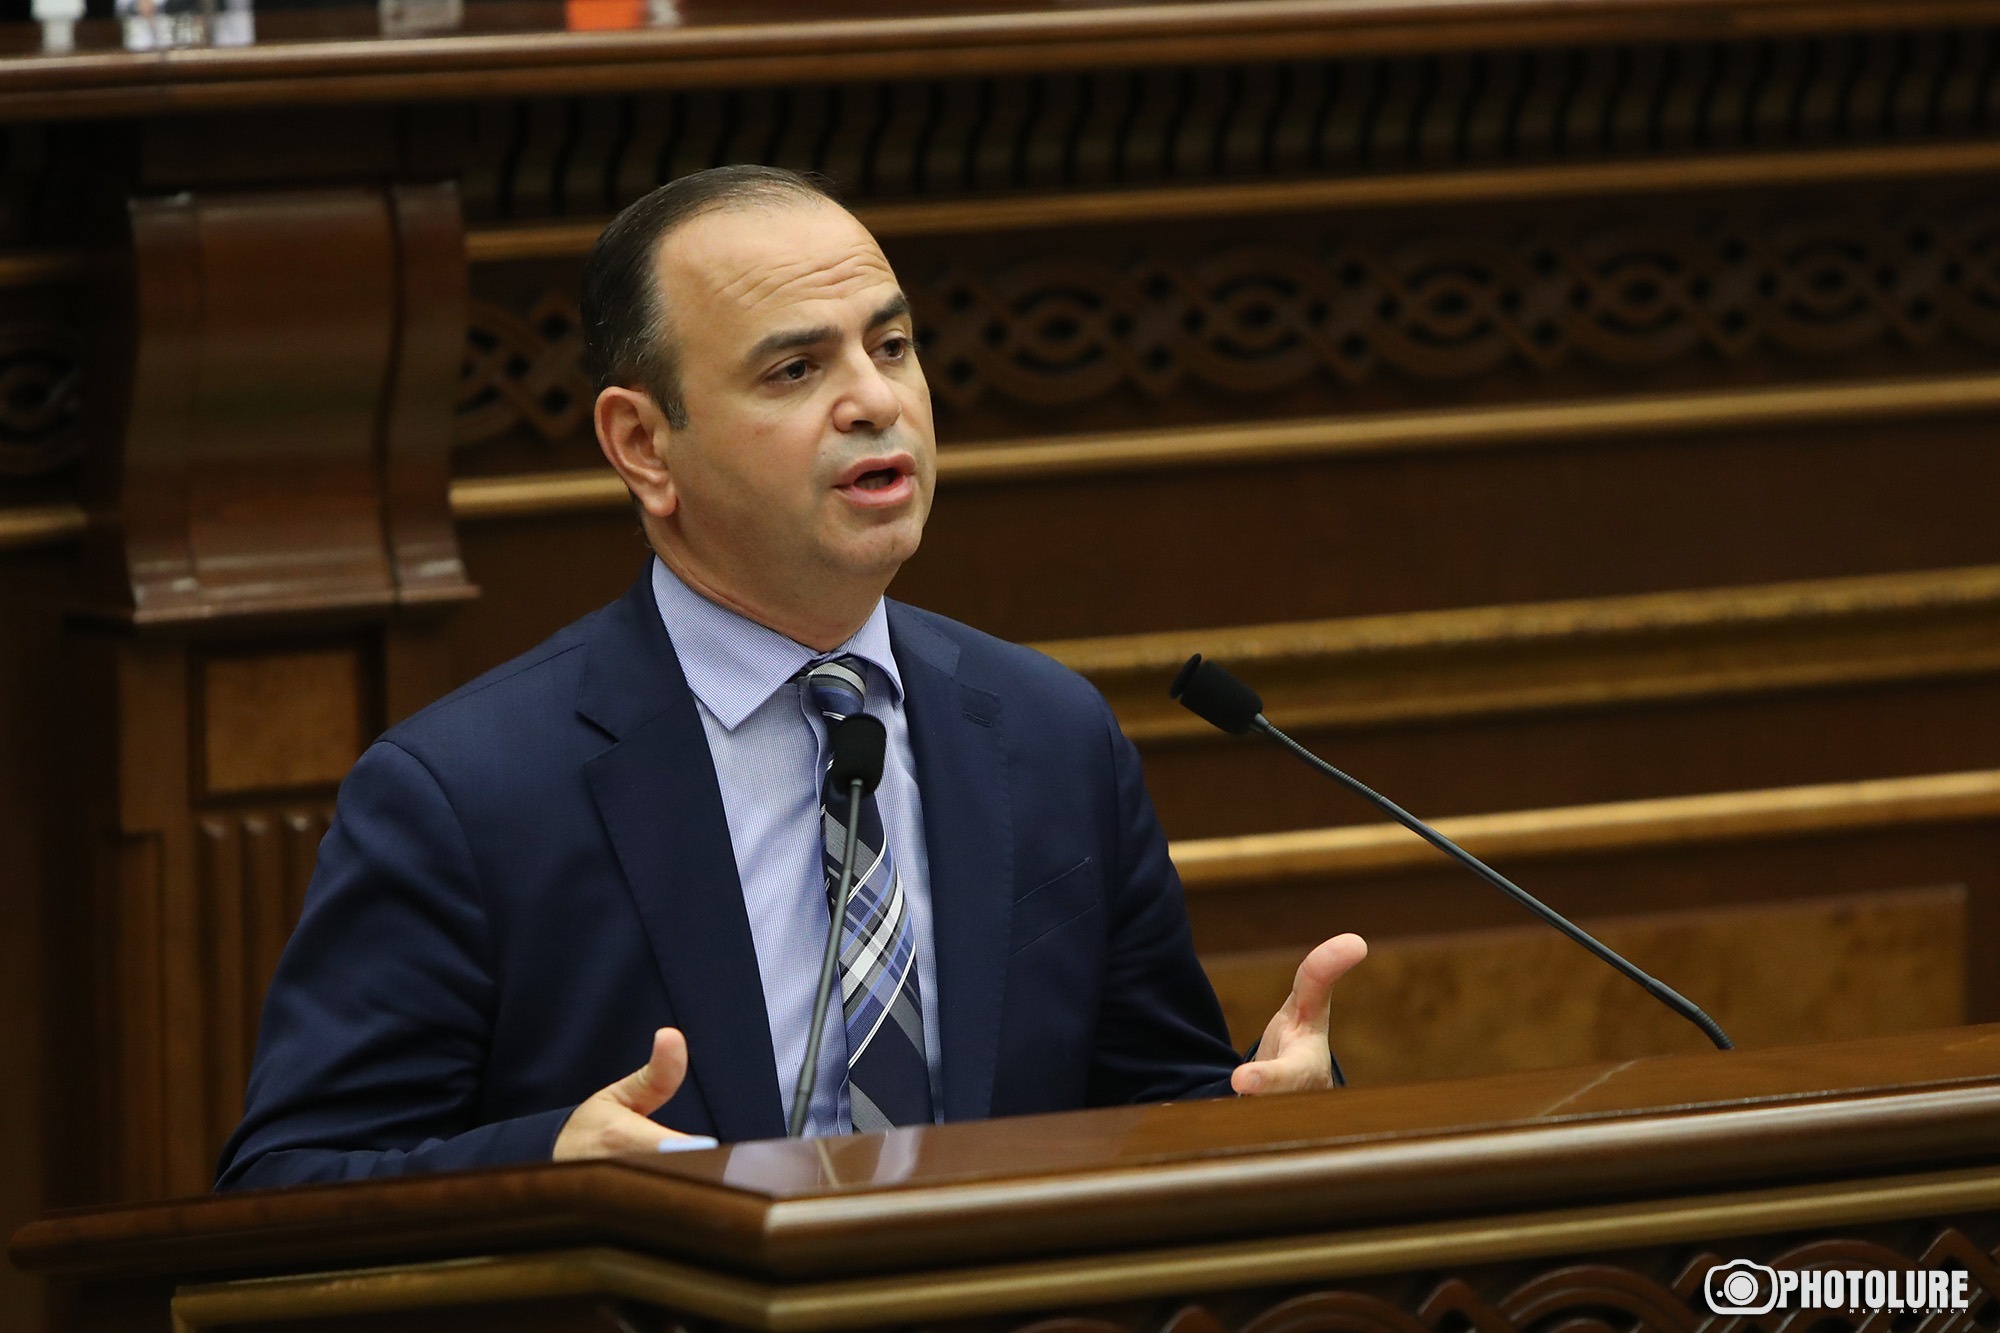 Կառավարությունն առաջարկում է հայ համայնքներում նշանակել սփյուռքի գործերի հանձնակատարներ